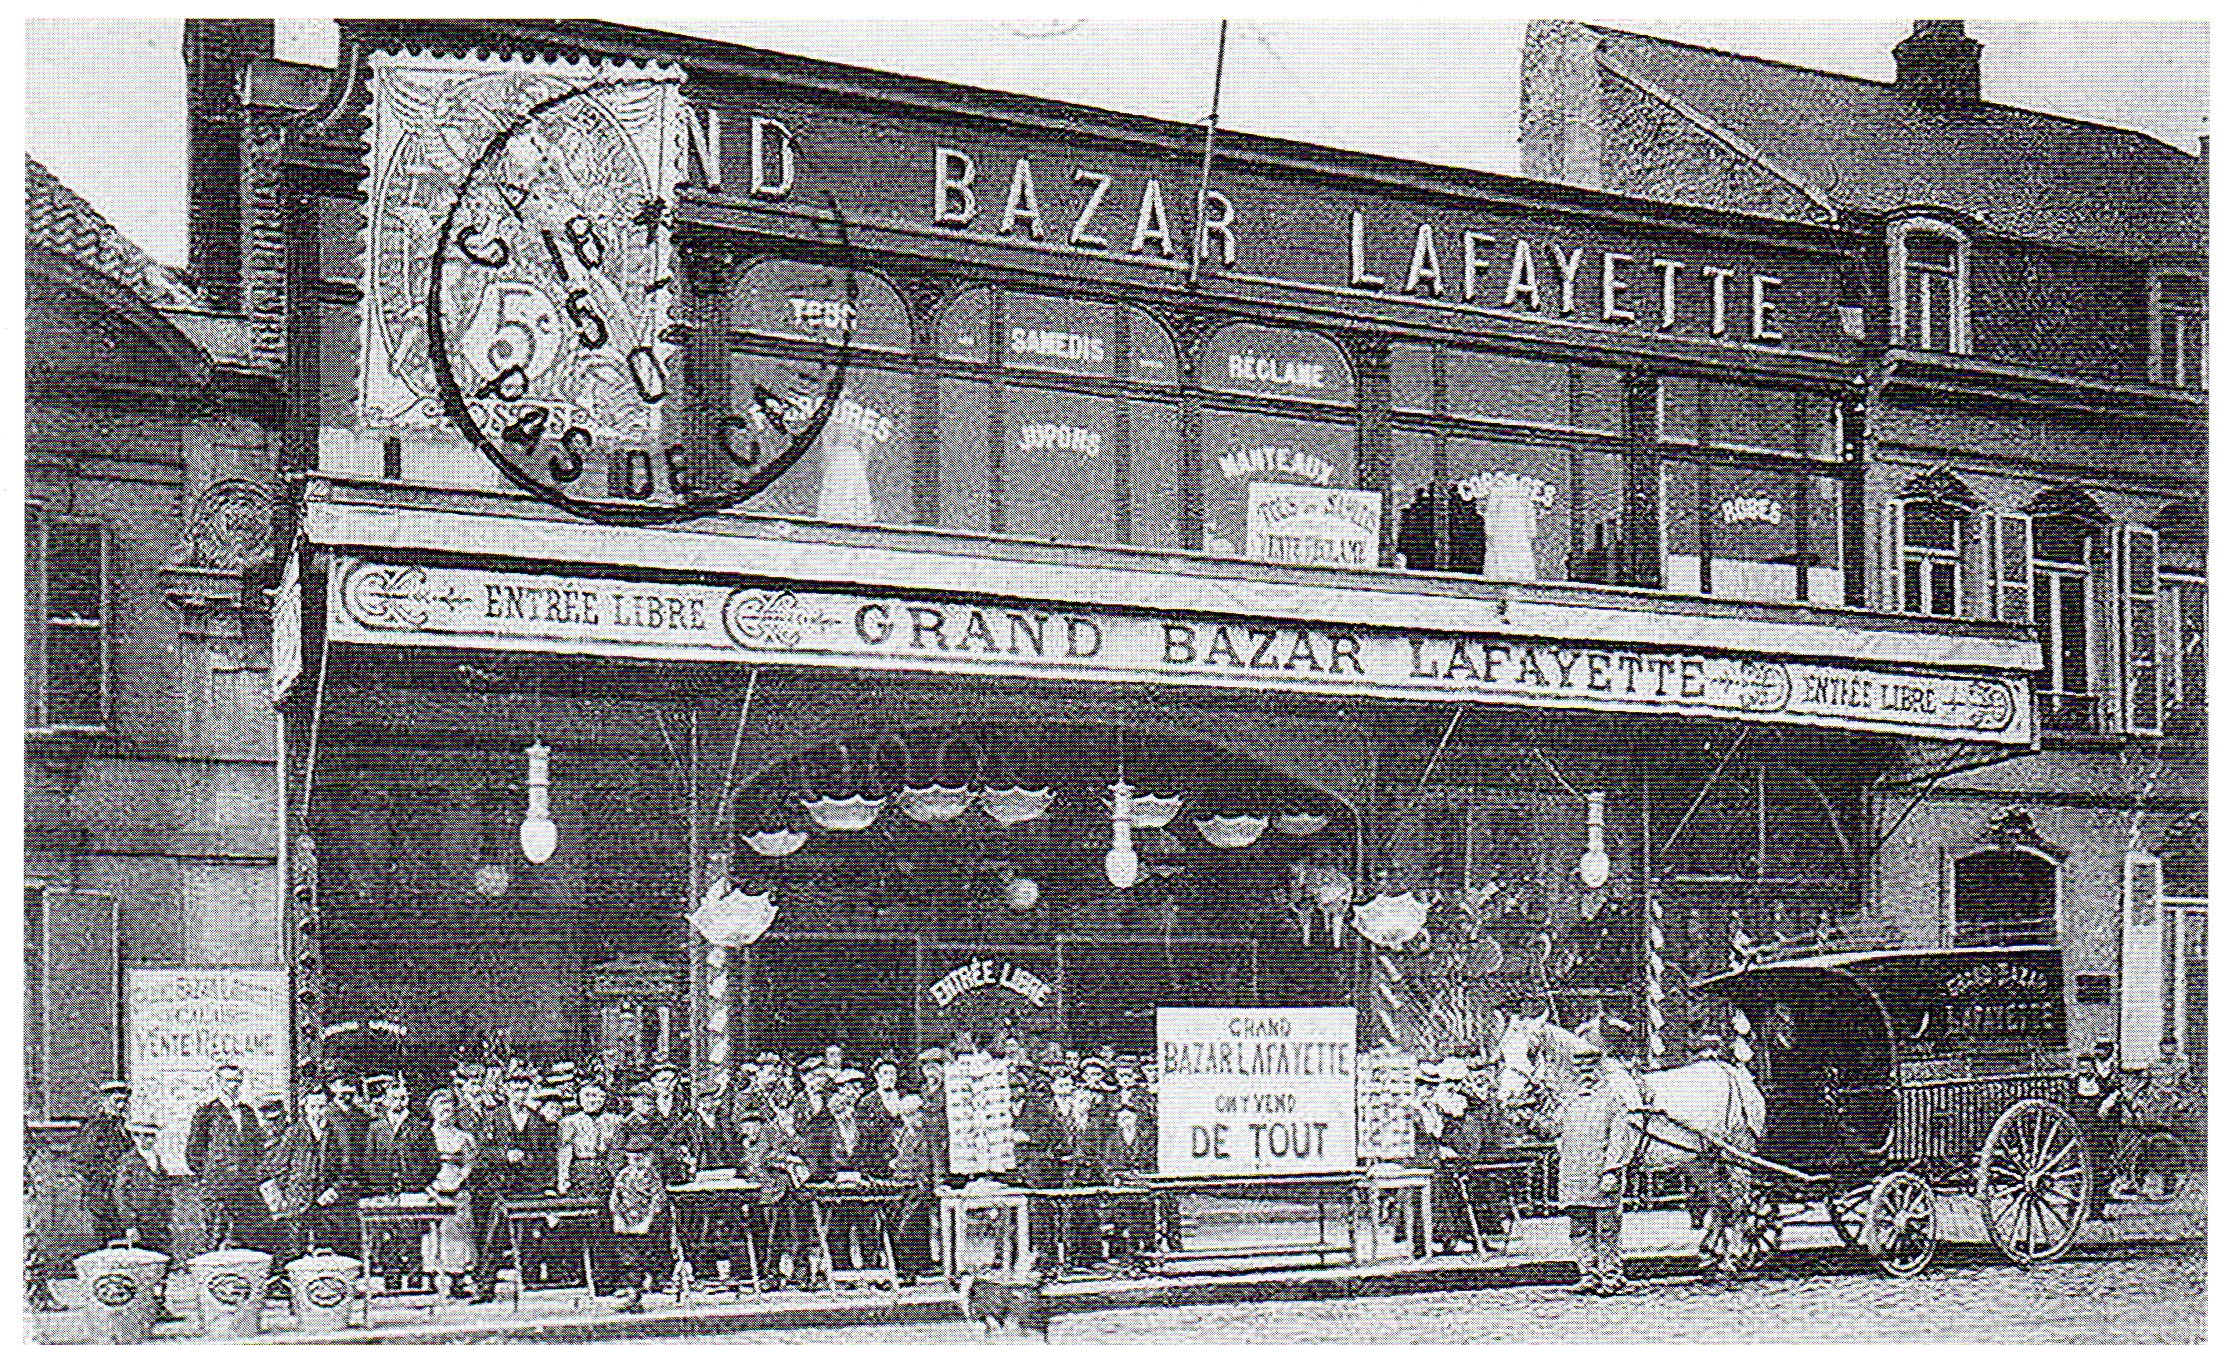 L'ancien bazar Lafayette